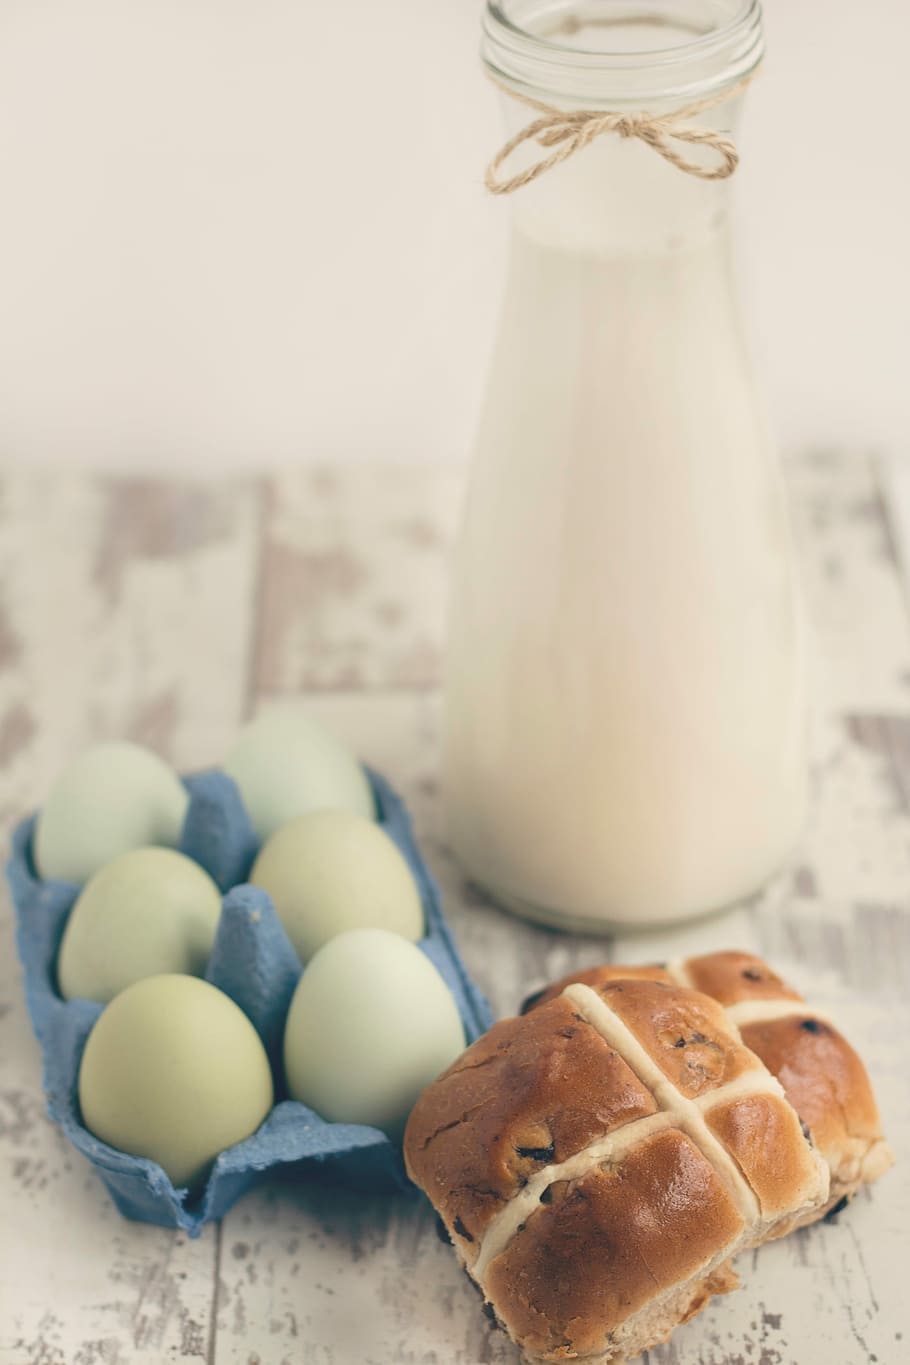 朝食の卵, 朝食, 卵, パン, 牛乳, 朝, 食品, 鮮度, 小麦粉, テーブル